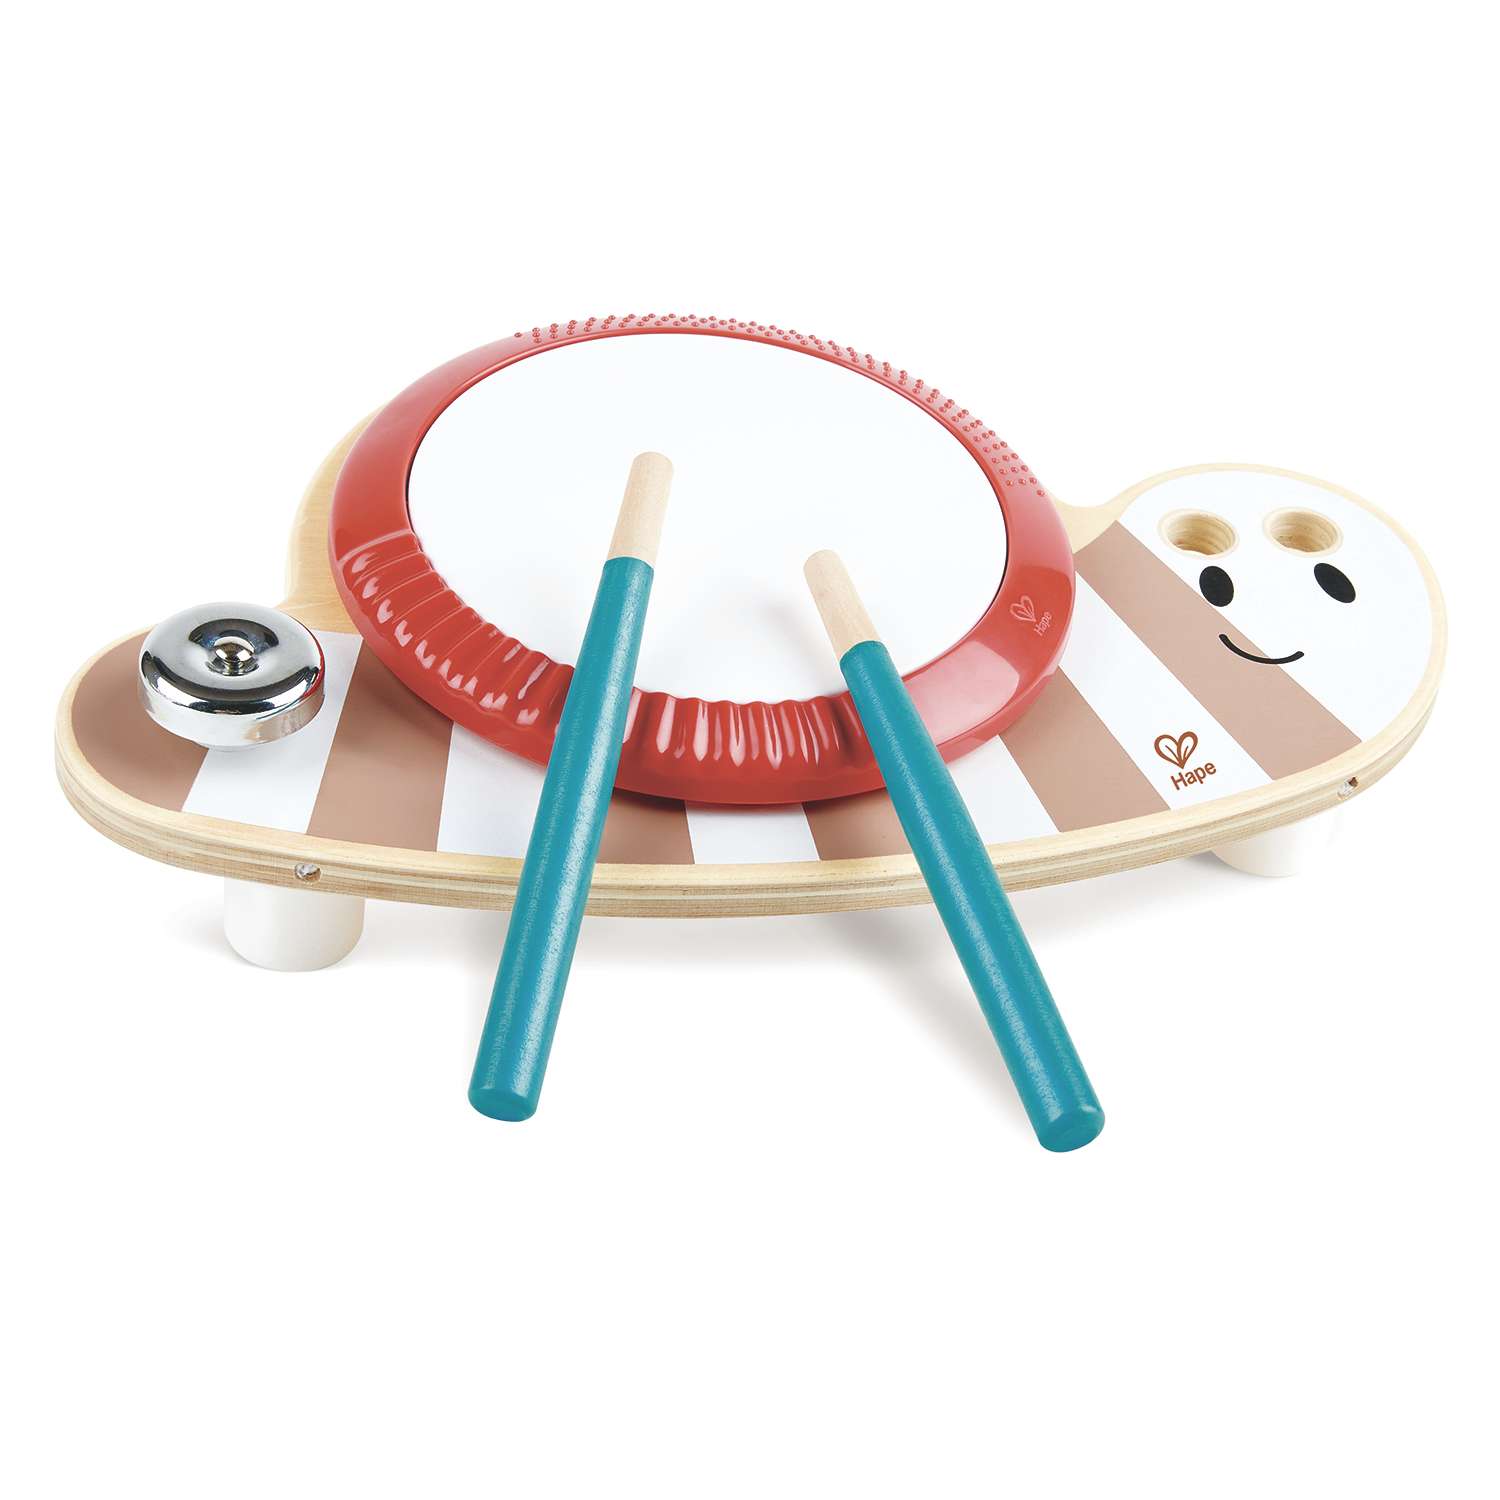 Музыкальная игрушка Hape барабан для малышей Улитка серия Пастель - фото 2